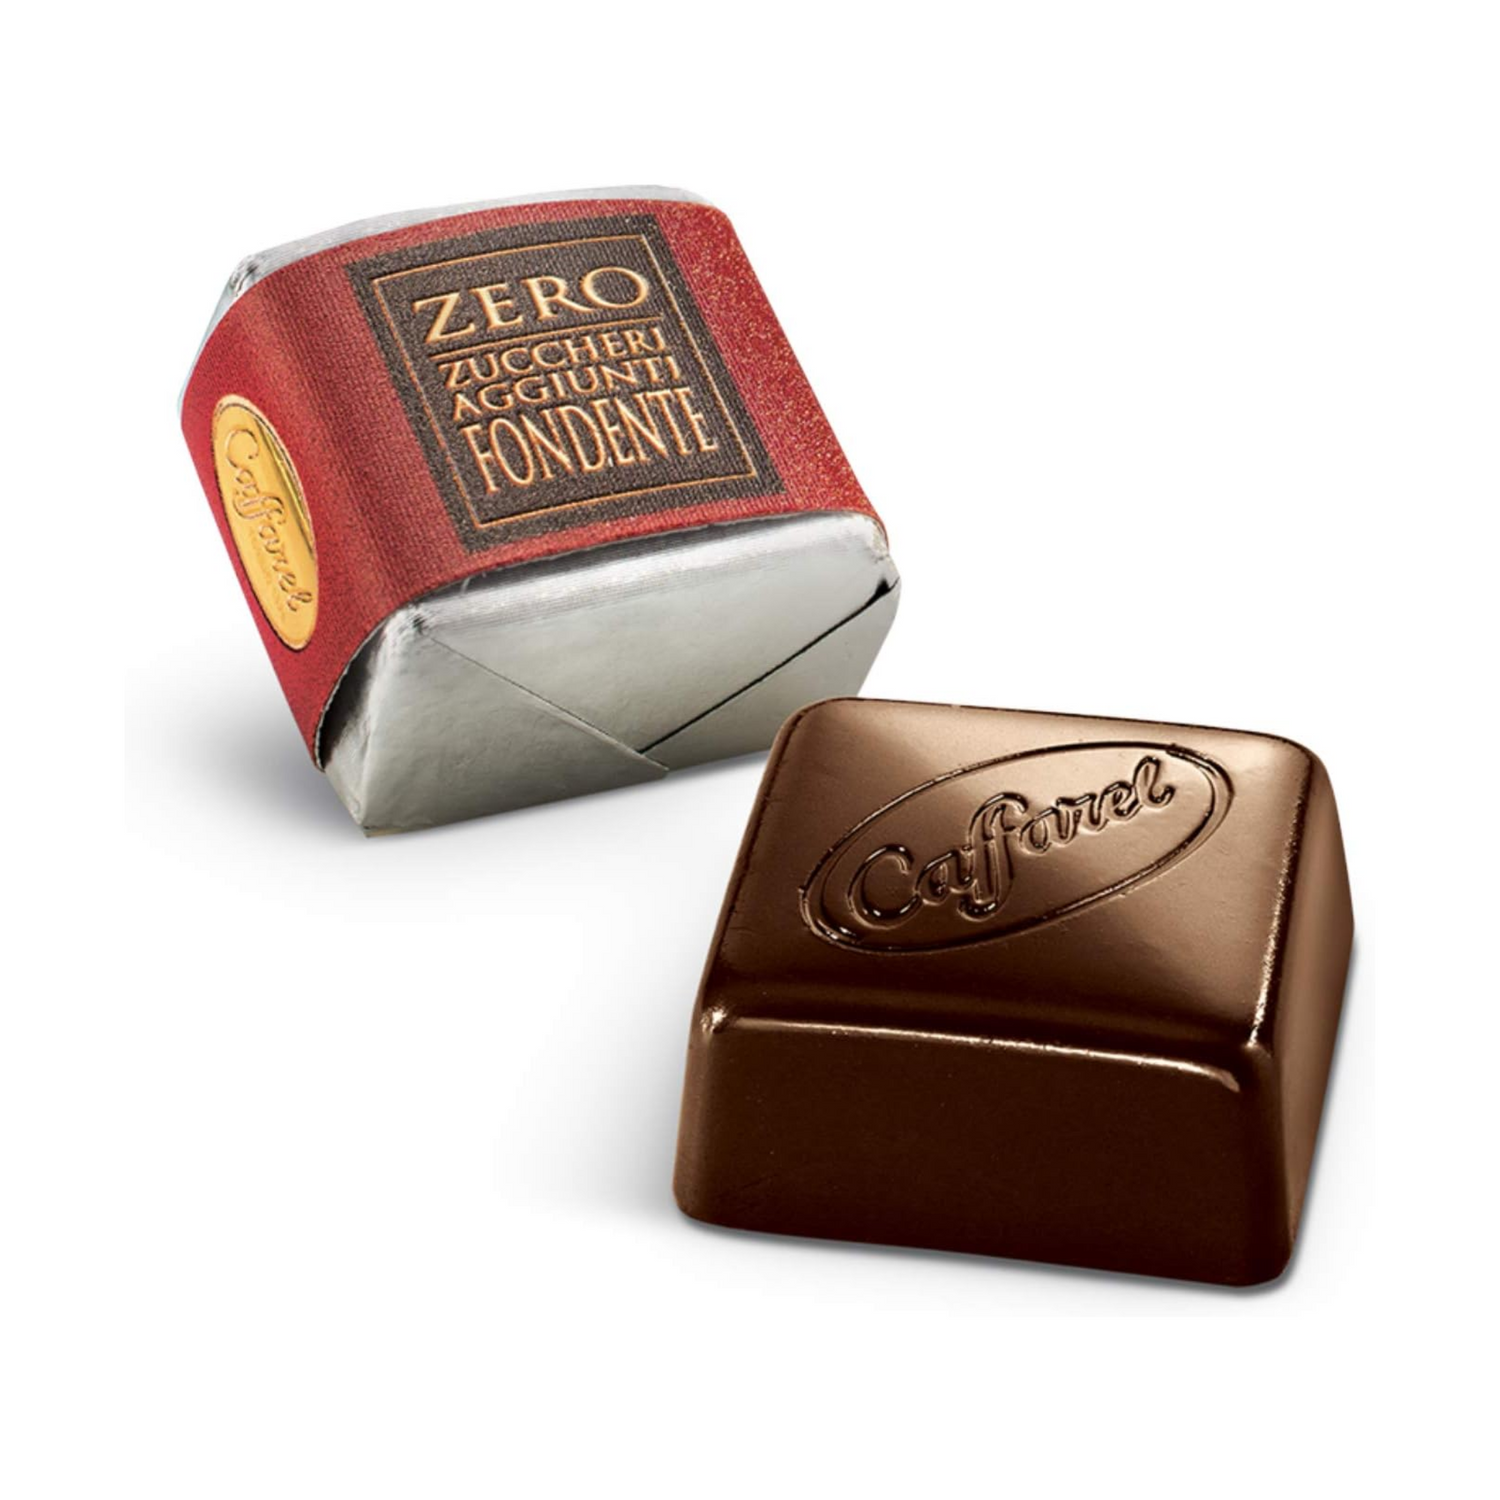 Cioccolatini Baci Perugina Classici 150gr - La Bottega del Cioccolato –  Dolmarr Cioccolato